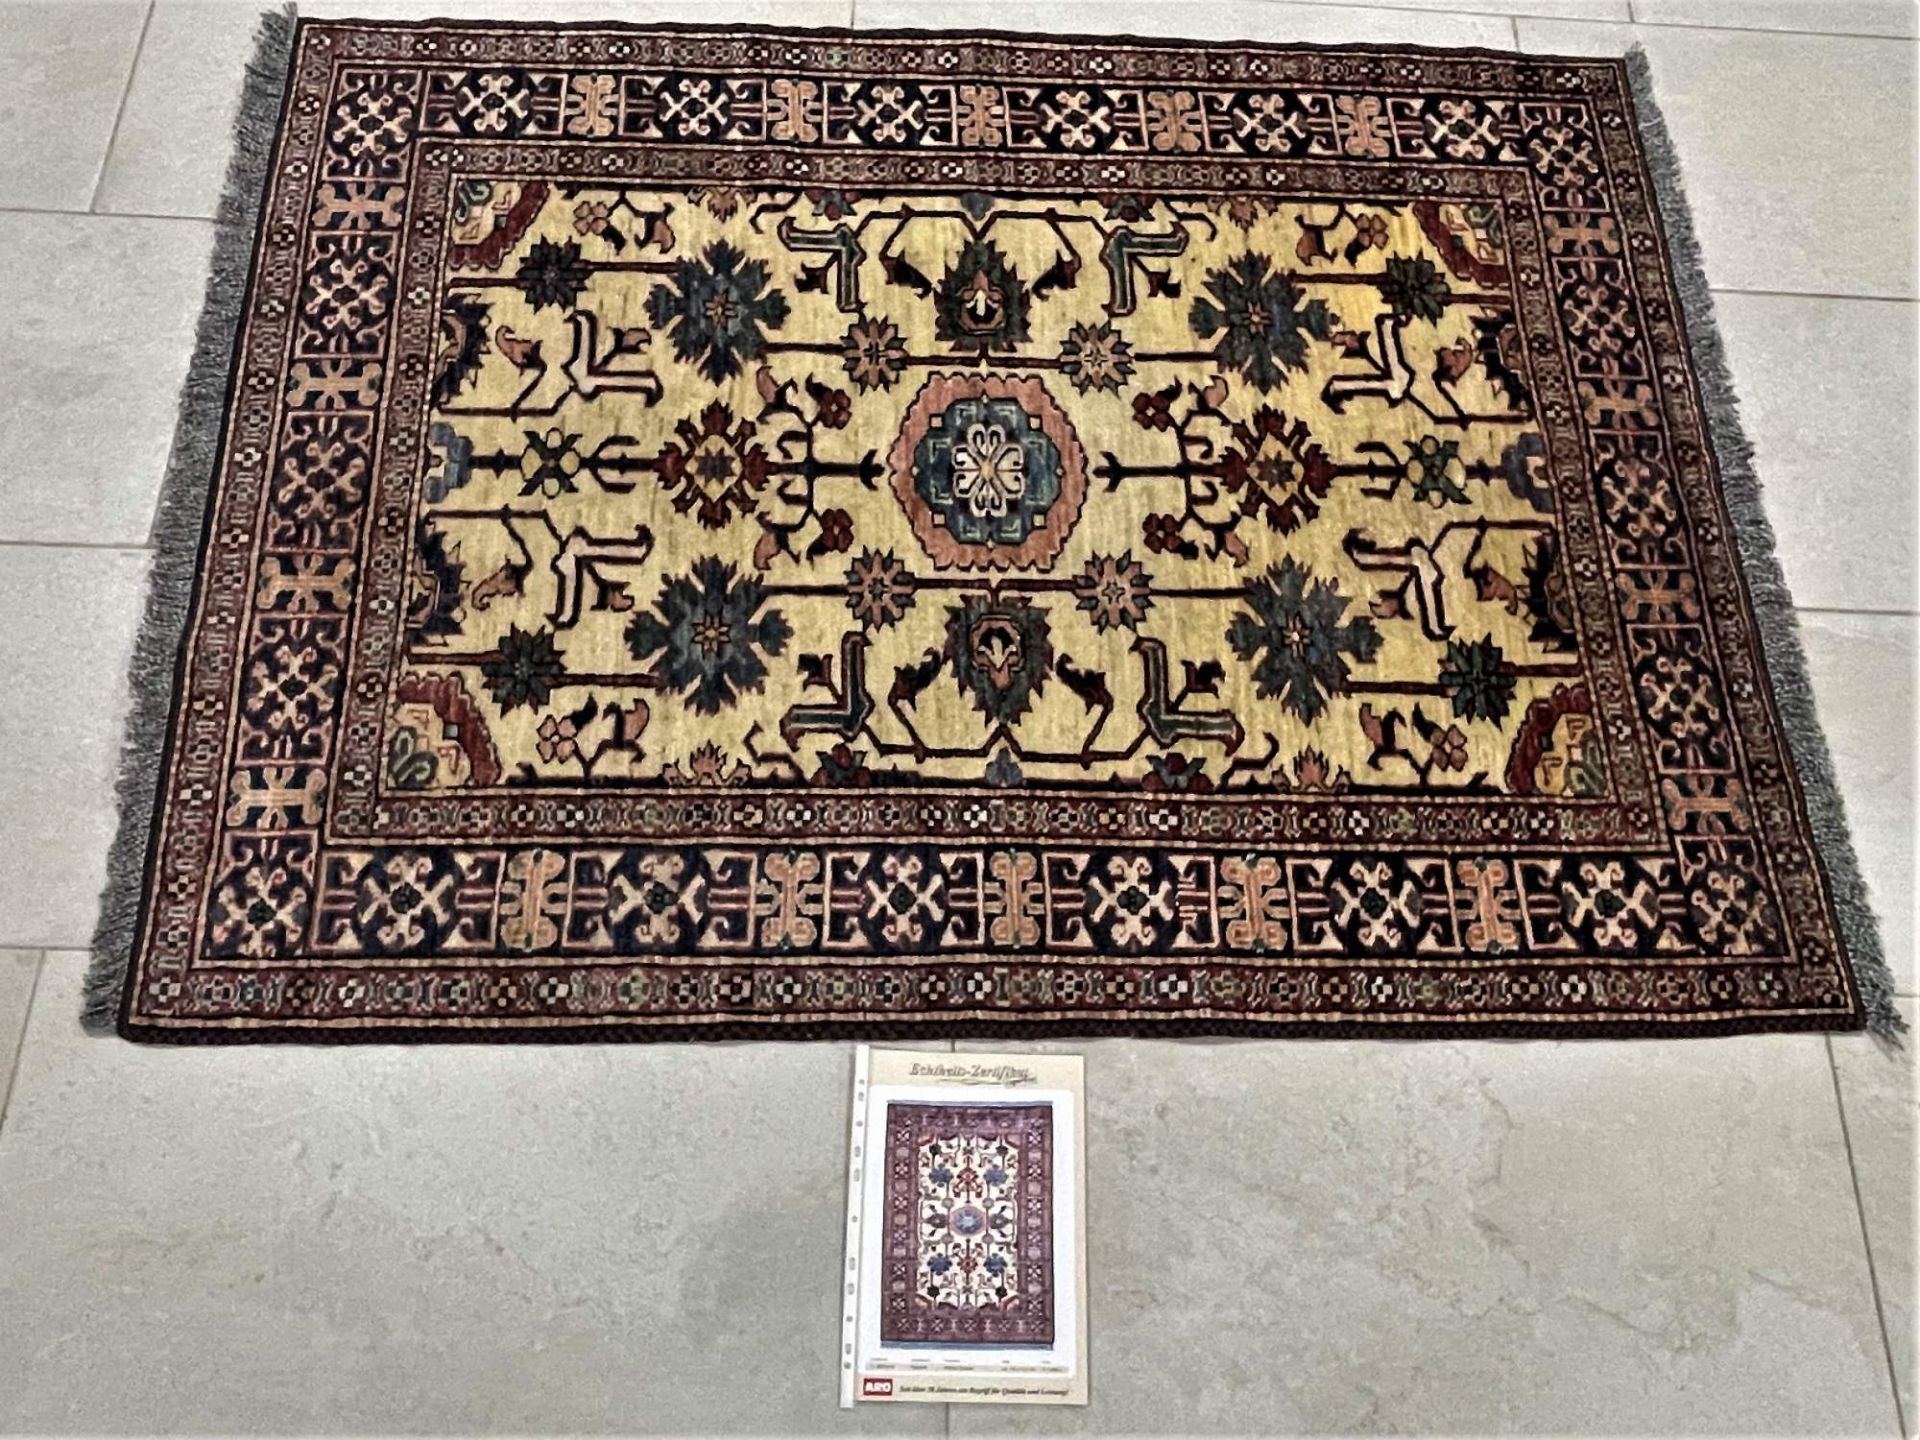 Oriental rug from Pakistan "Afghan Kazzak" - 161 x 121 cm